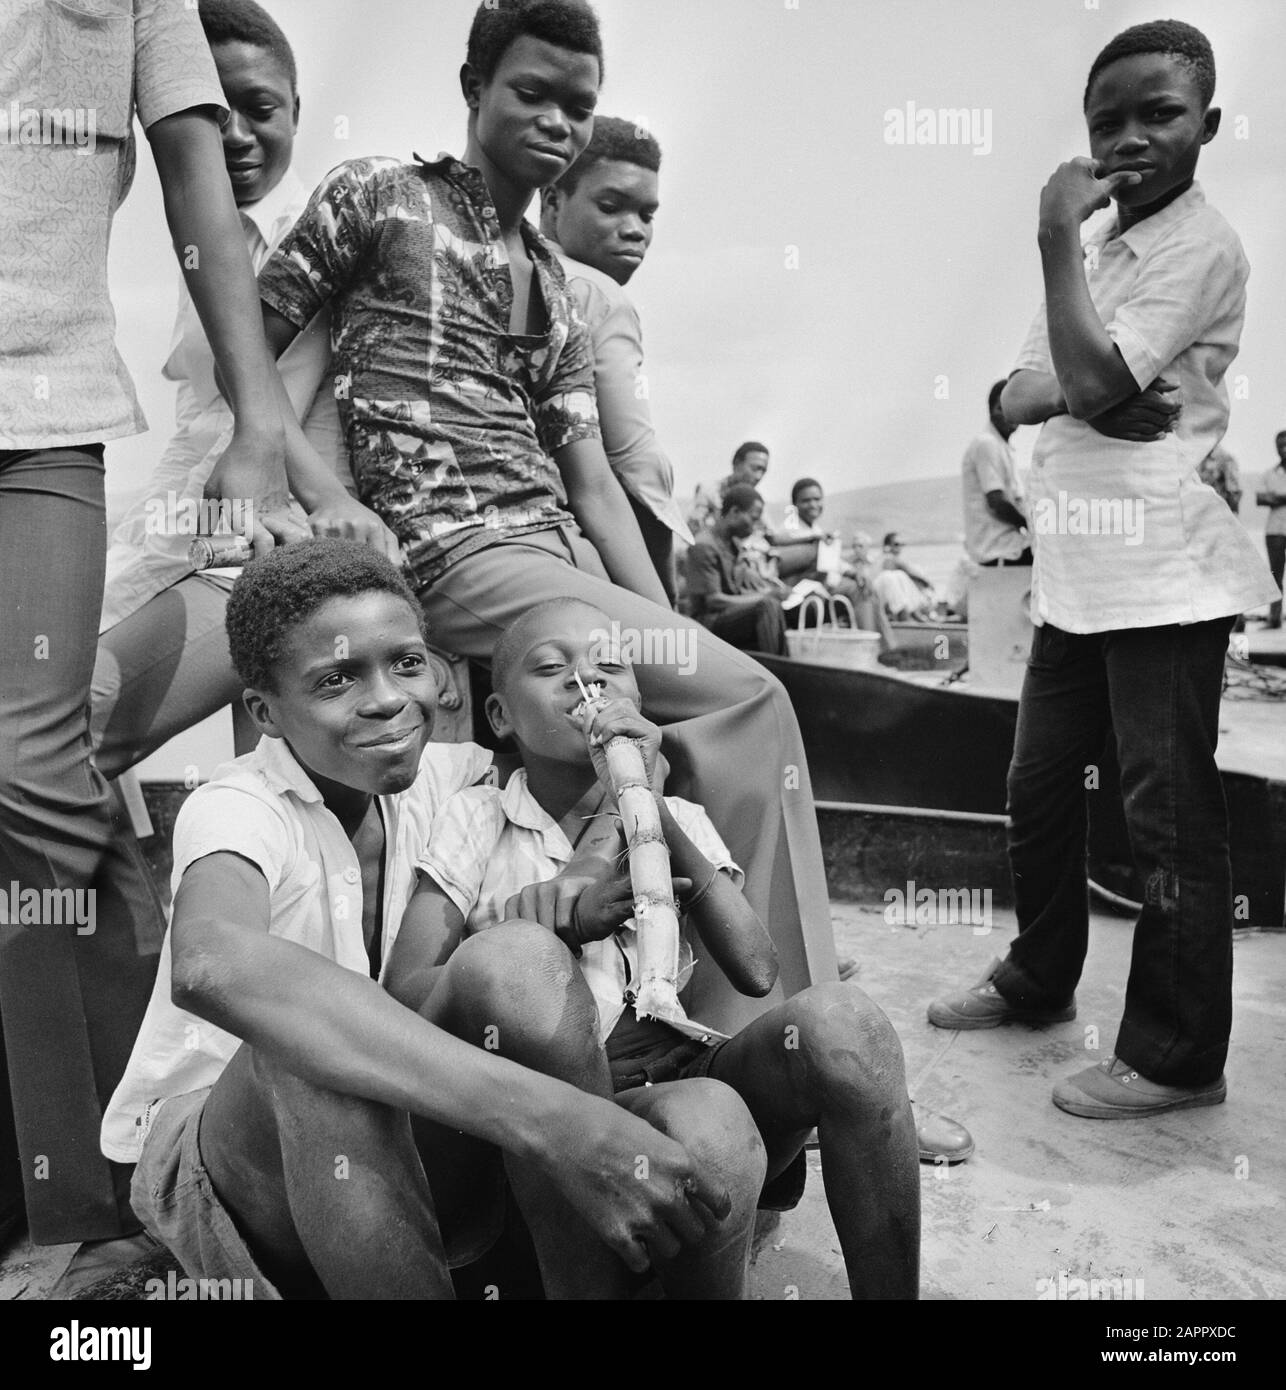 Zaire (ehemals Belgisch-Kongo) Kinder und Jugendliche auf dem Land Datum: 24. Oktober 1973 Ort: Kongo, Zaire Schlüsselwörter: Dorfleben, Jugend, Kinder Stockfoto